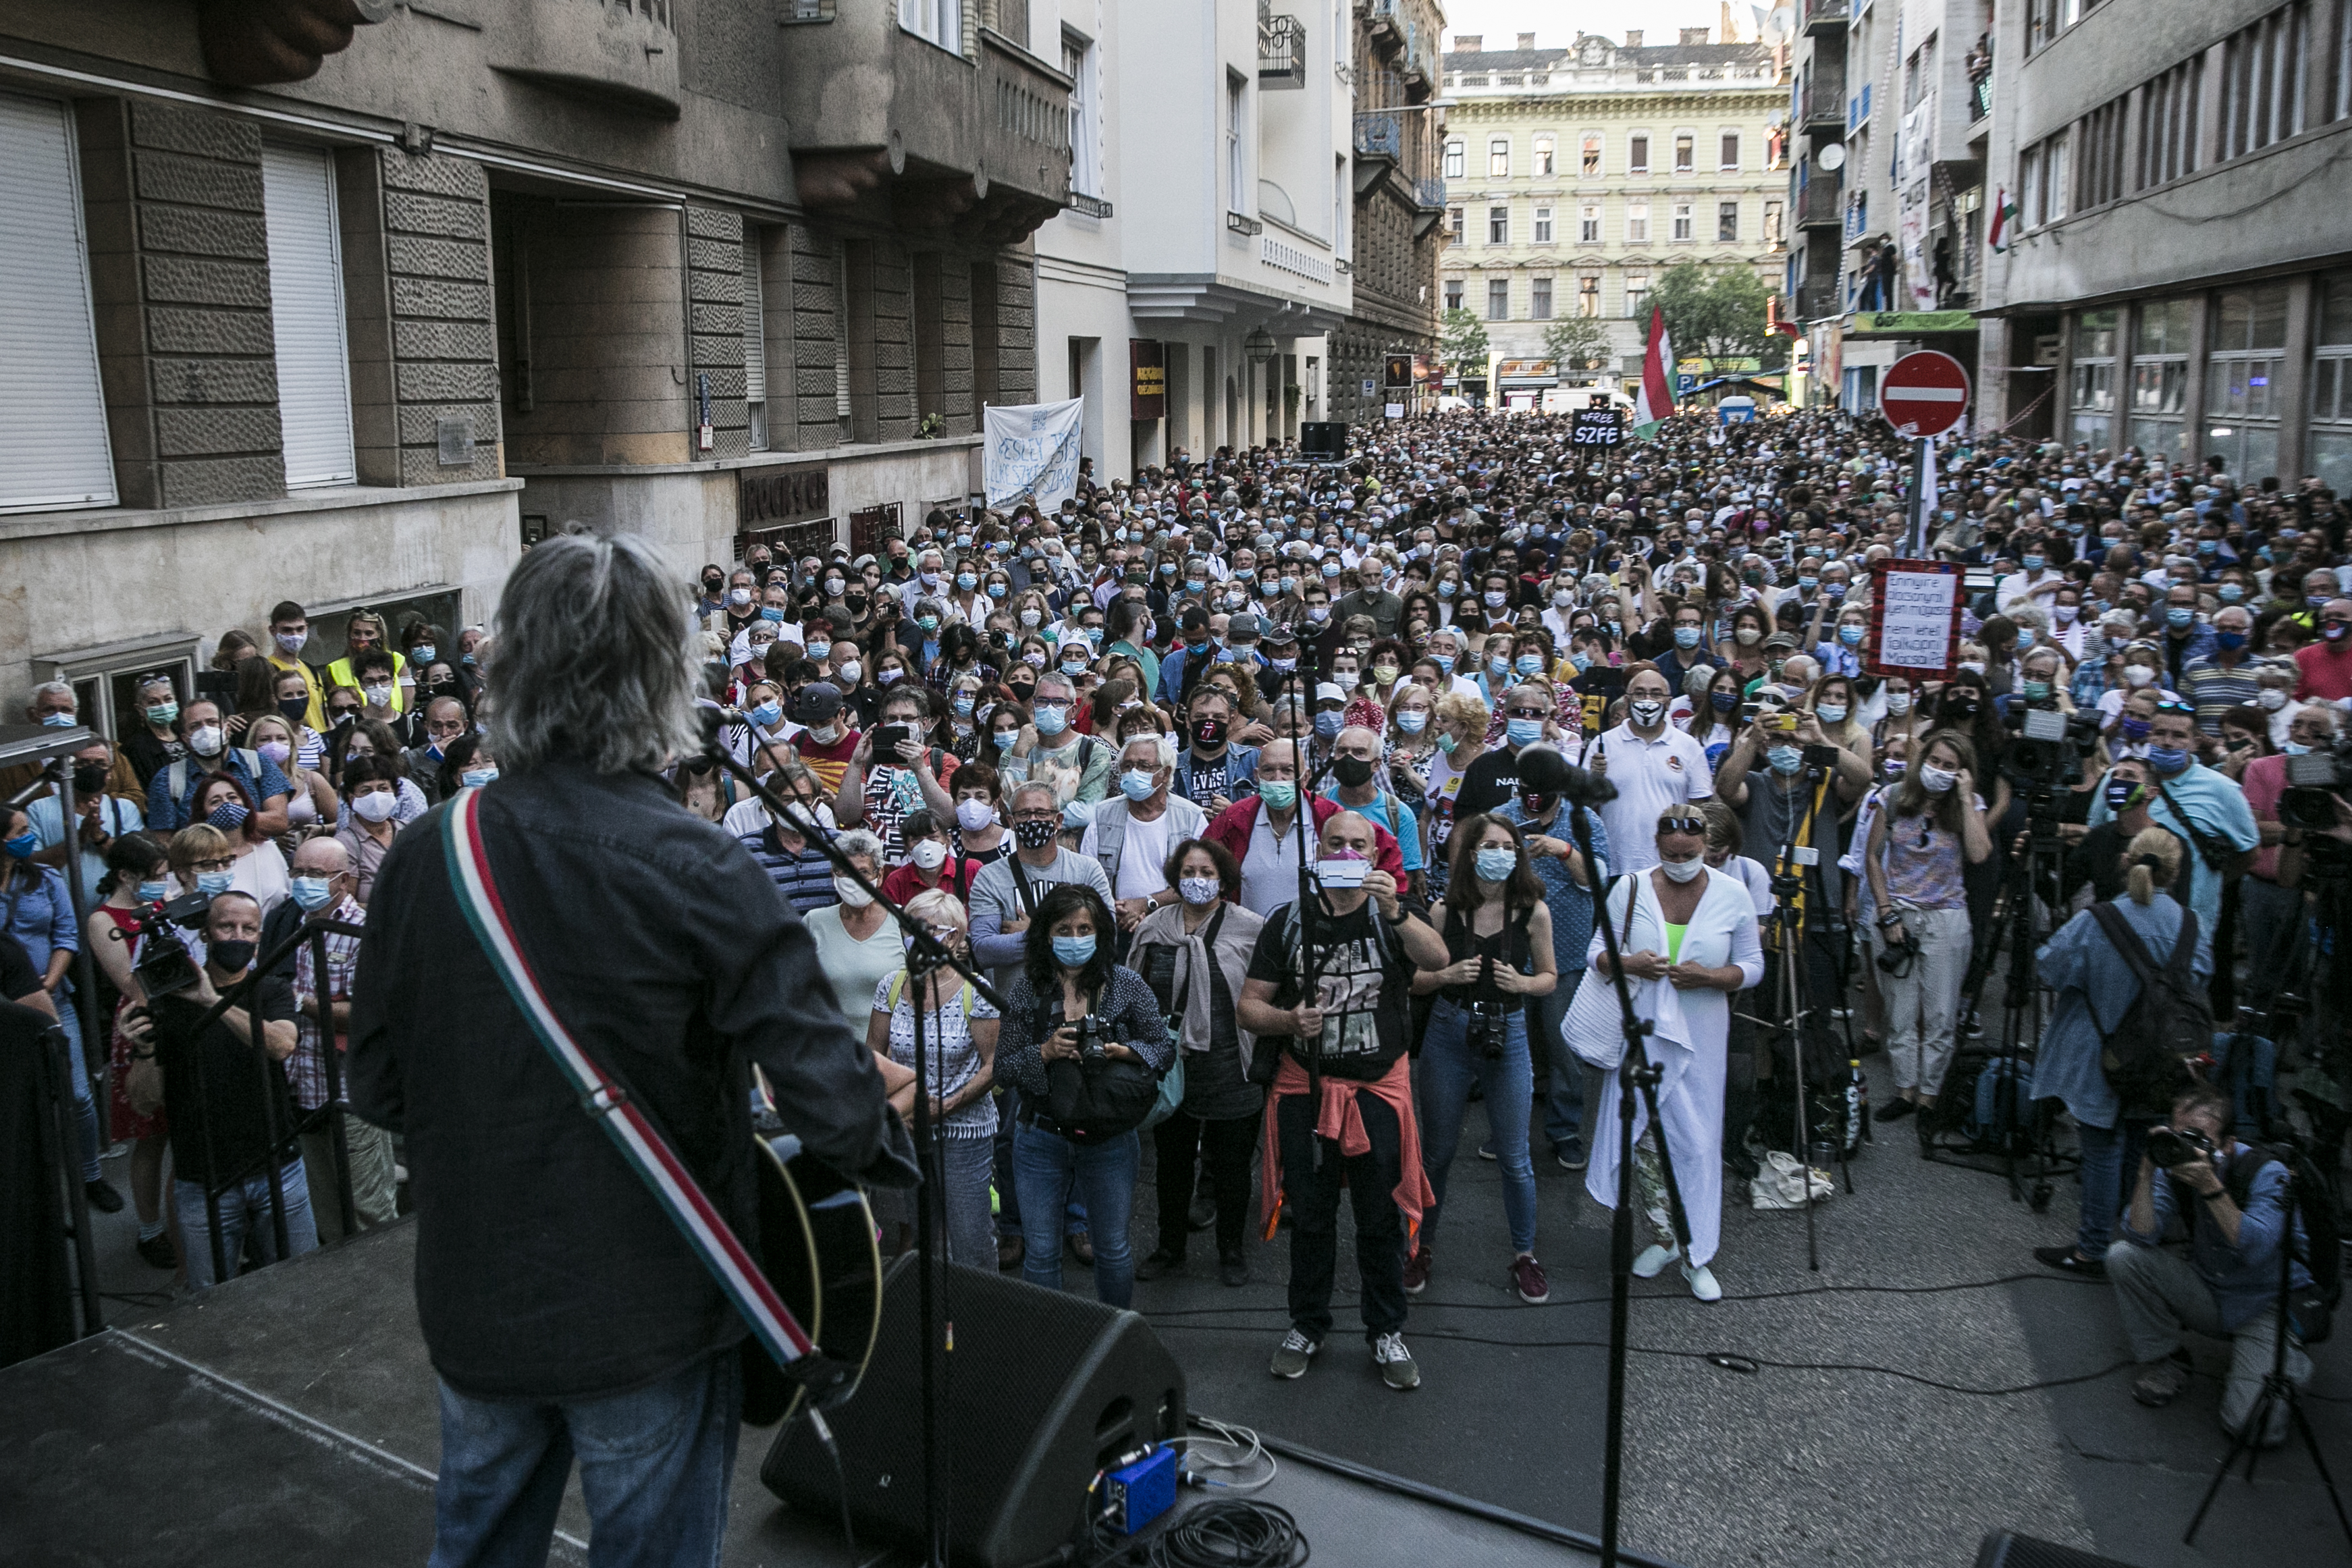 Bródy János örökös tüntetésfellépő zenél a Vas utcában szeptember 4-én.